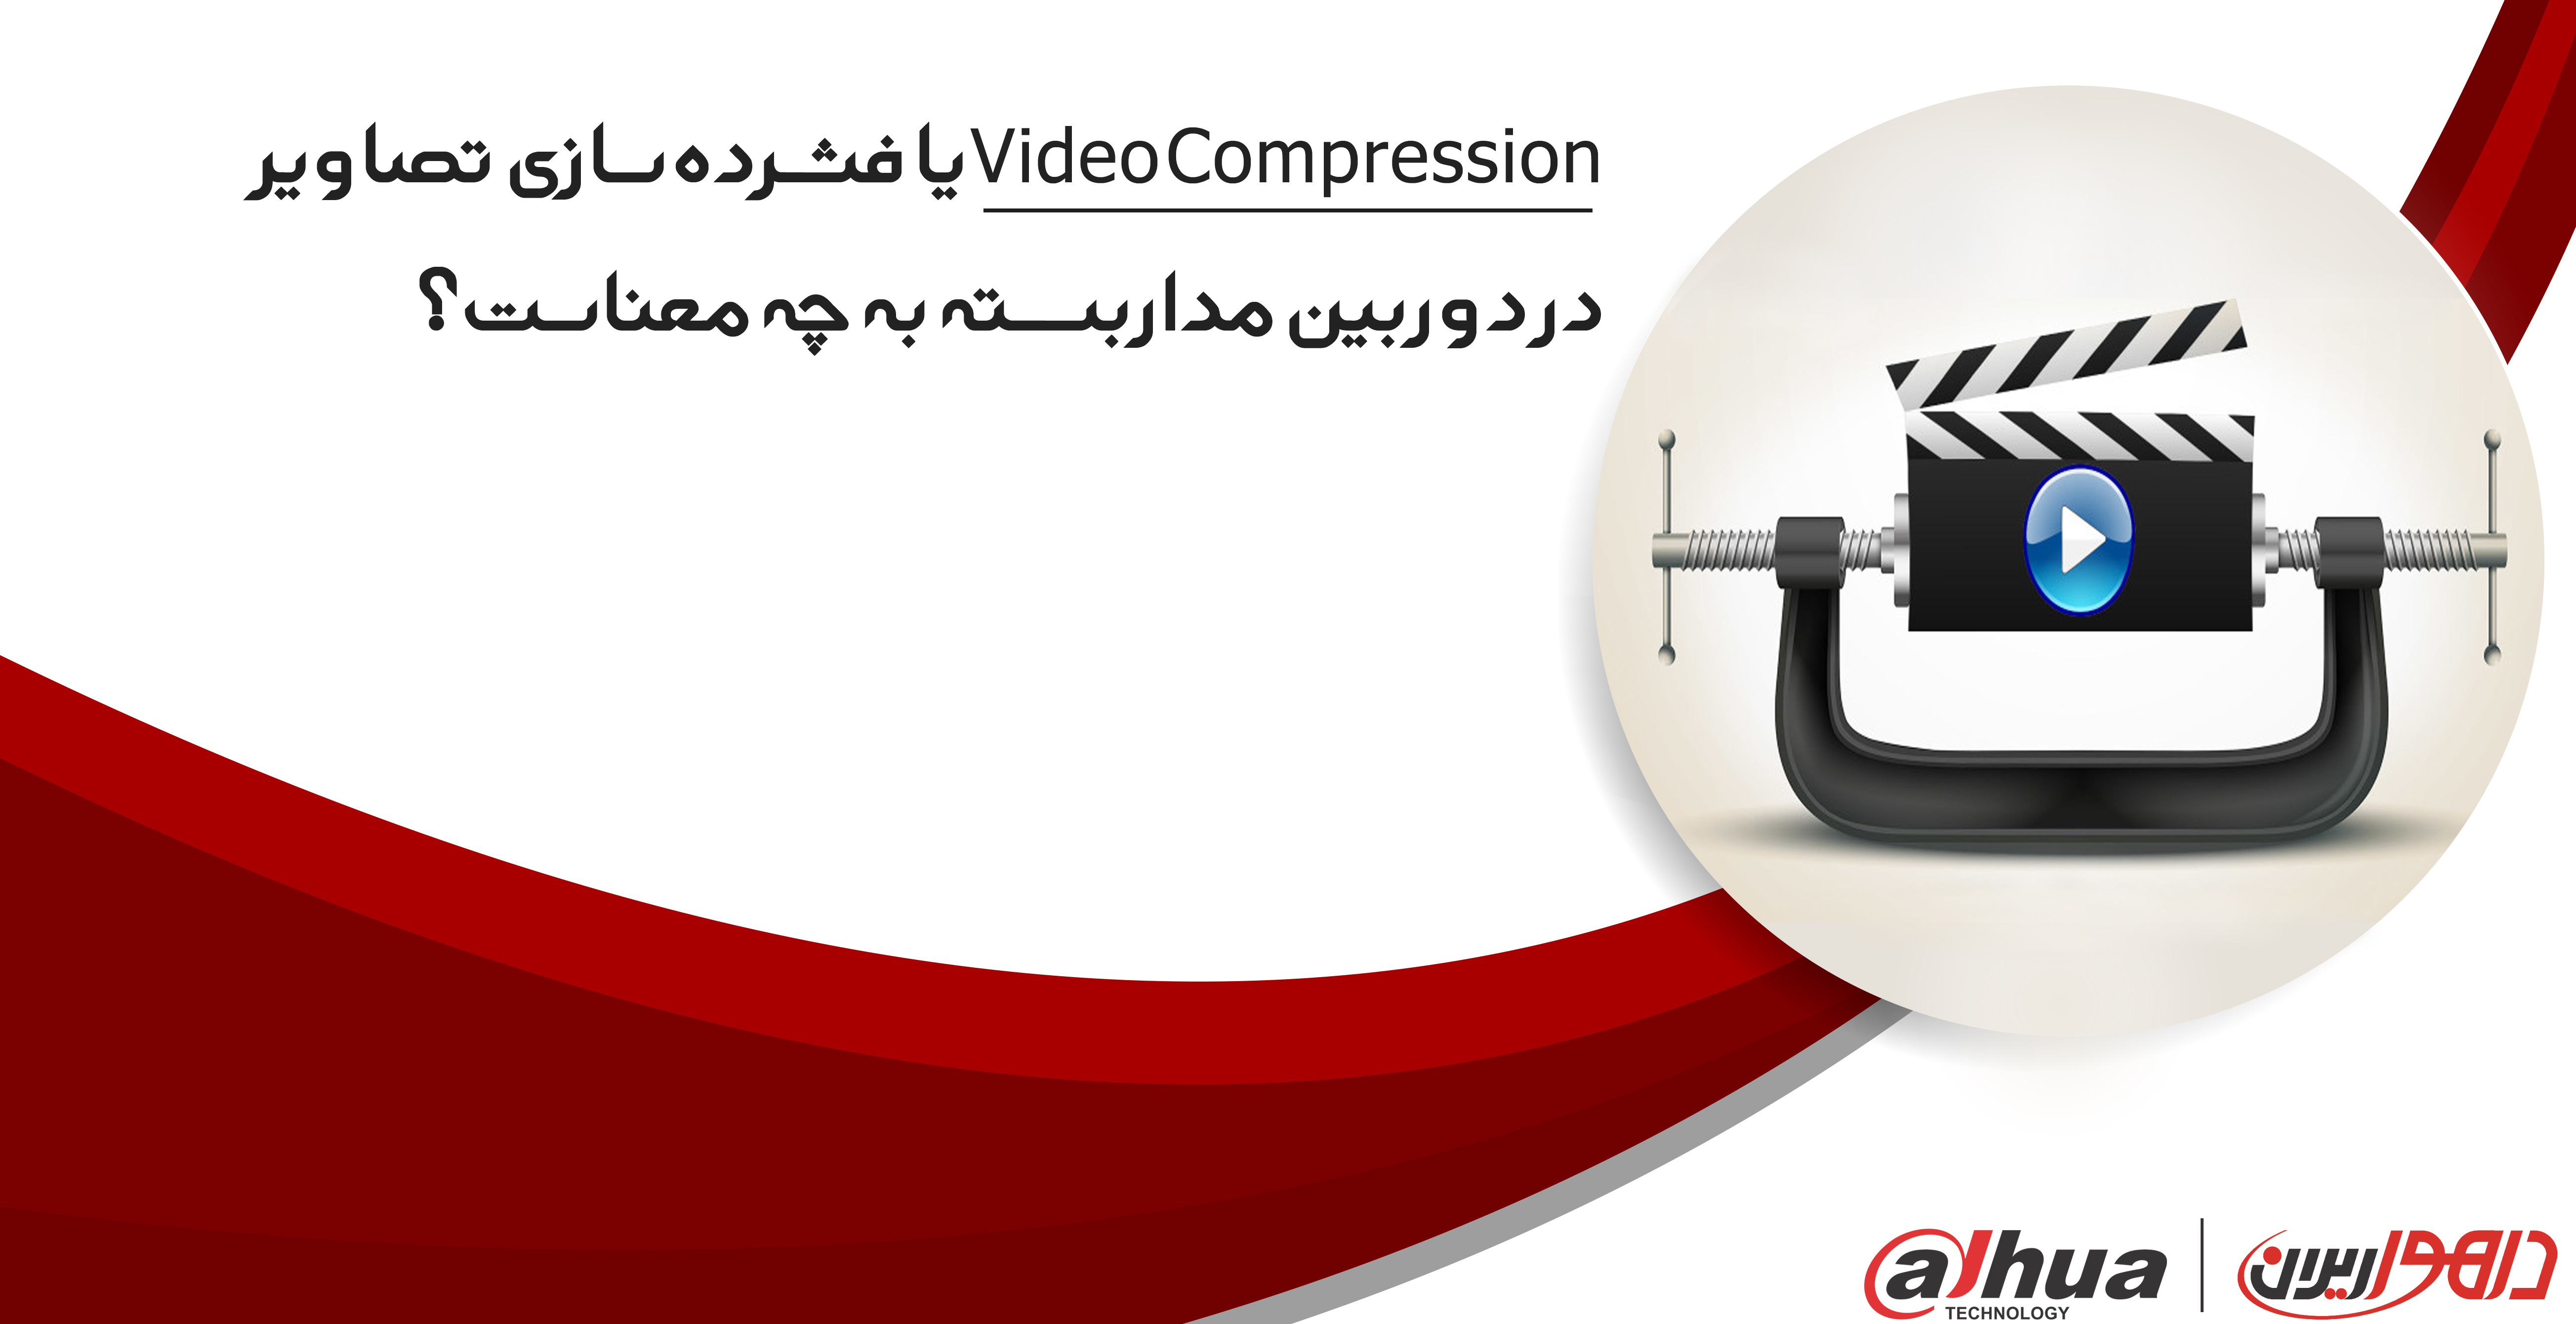  یا فشرده سازی تصاویر در دوربین مداربسته به چه معناست؟Video Compression